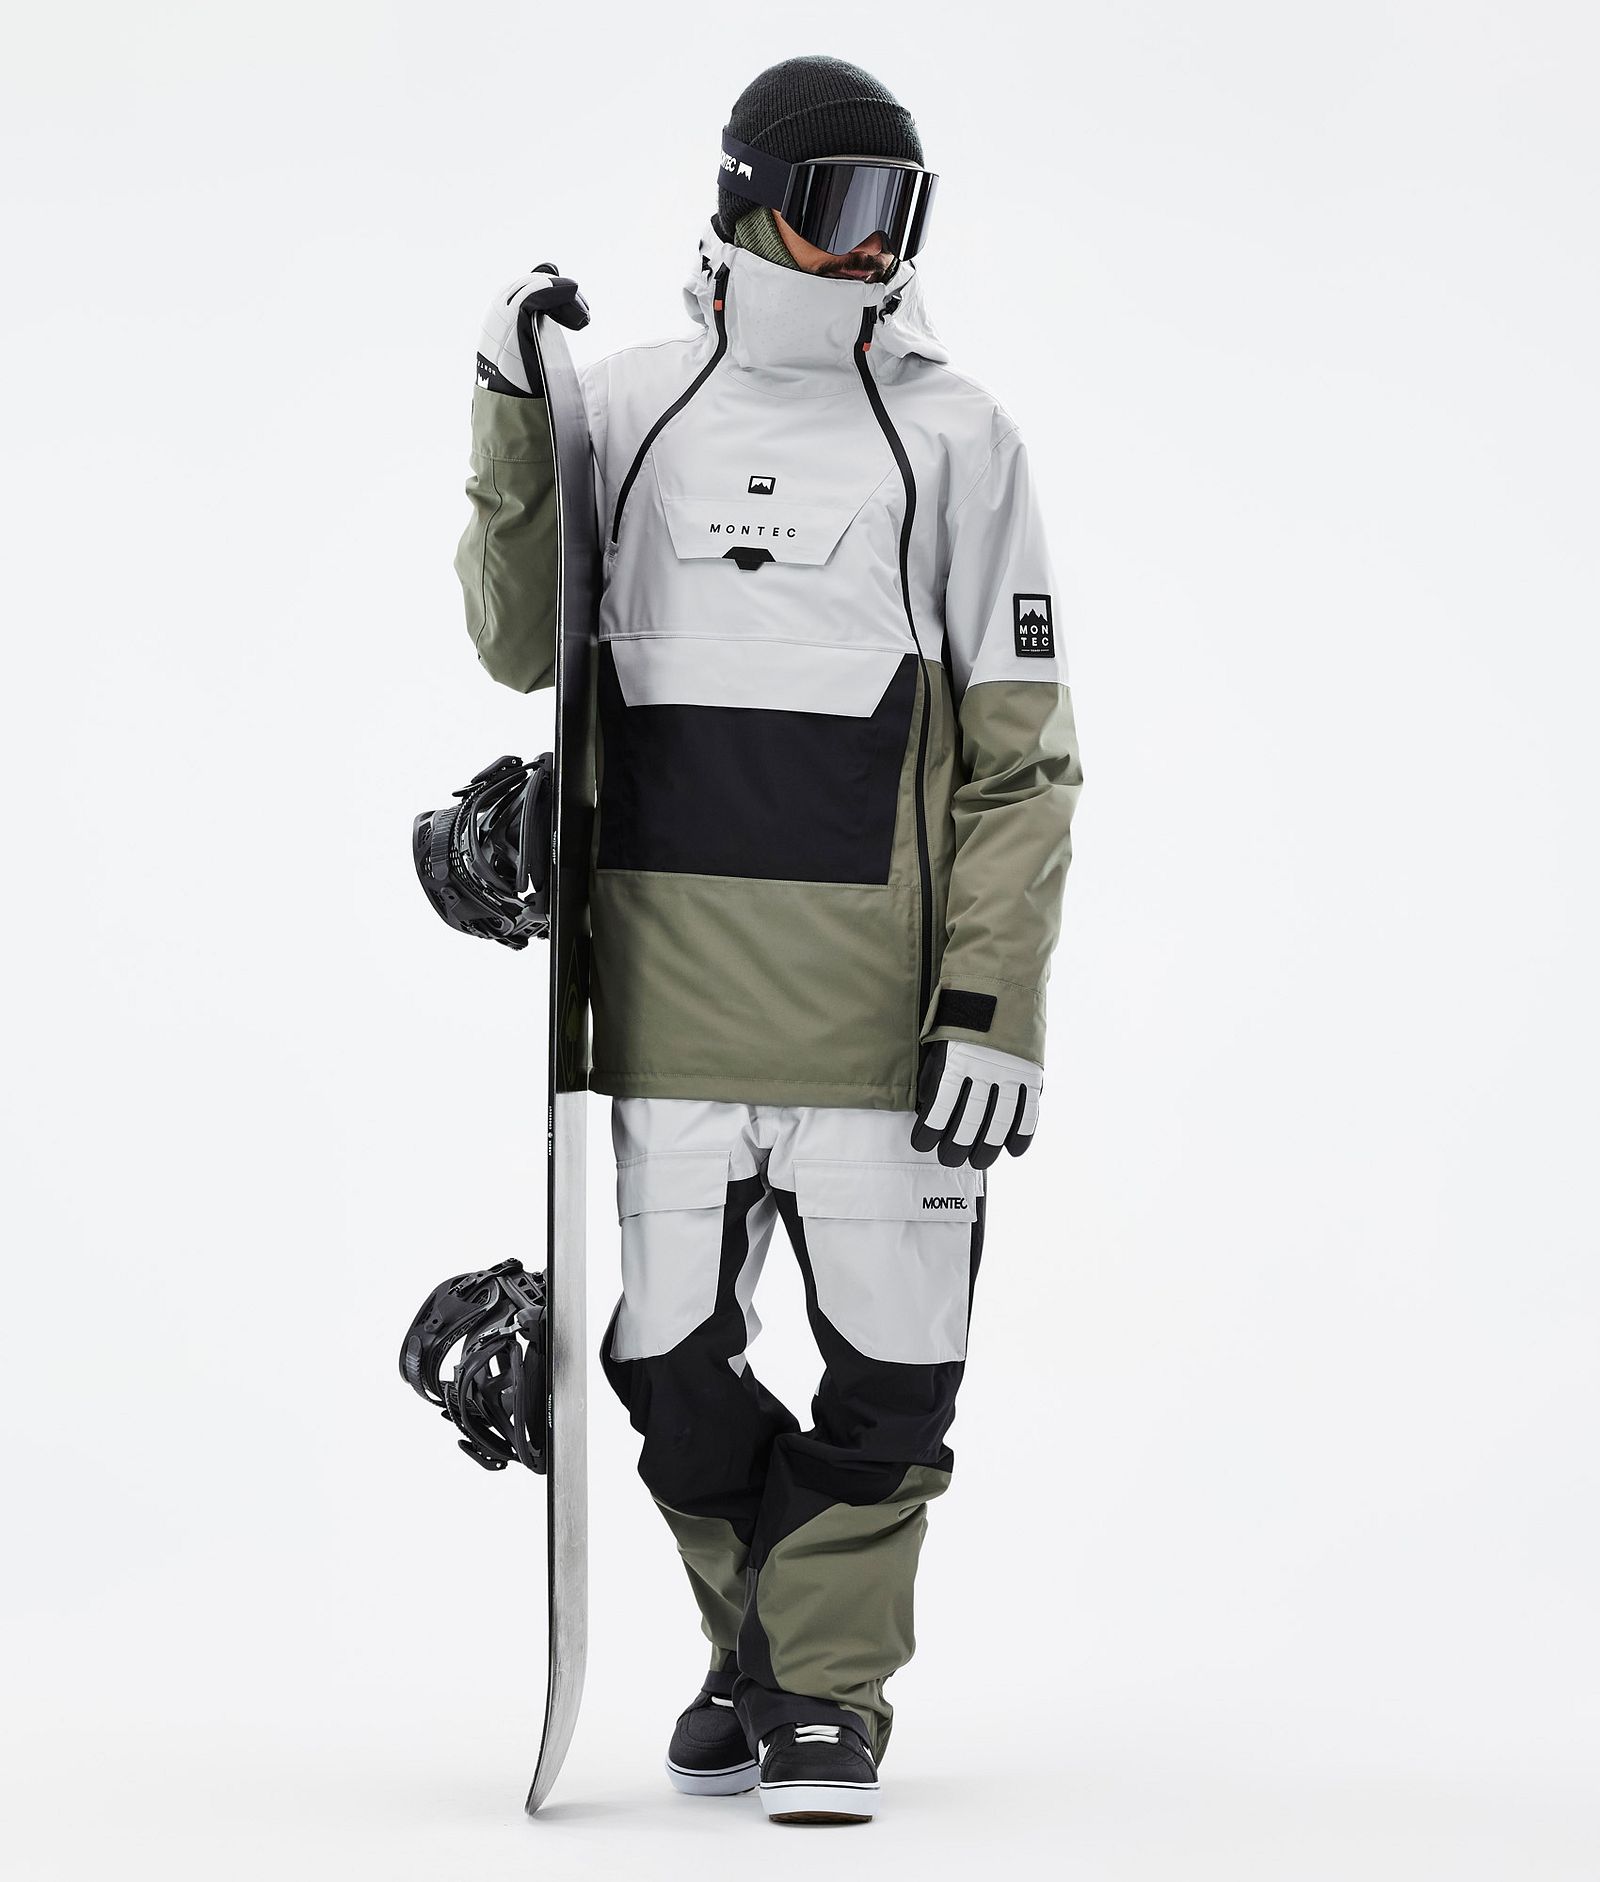 Montec Doom Snowboard jas Heren Light Grey/Black/Greenish